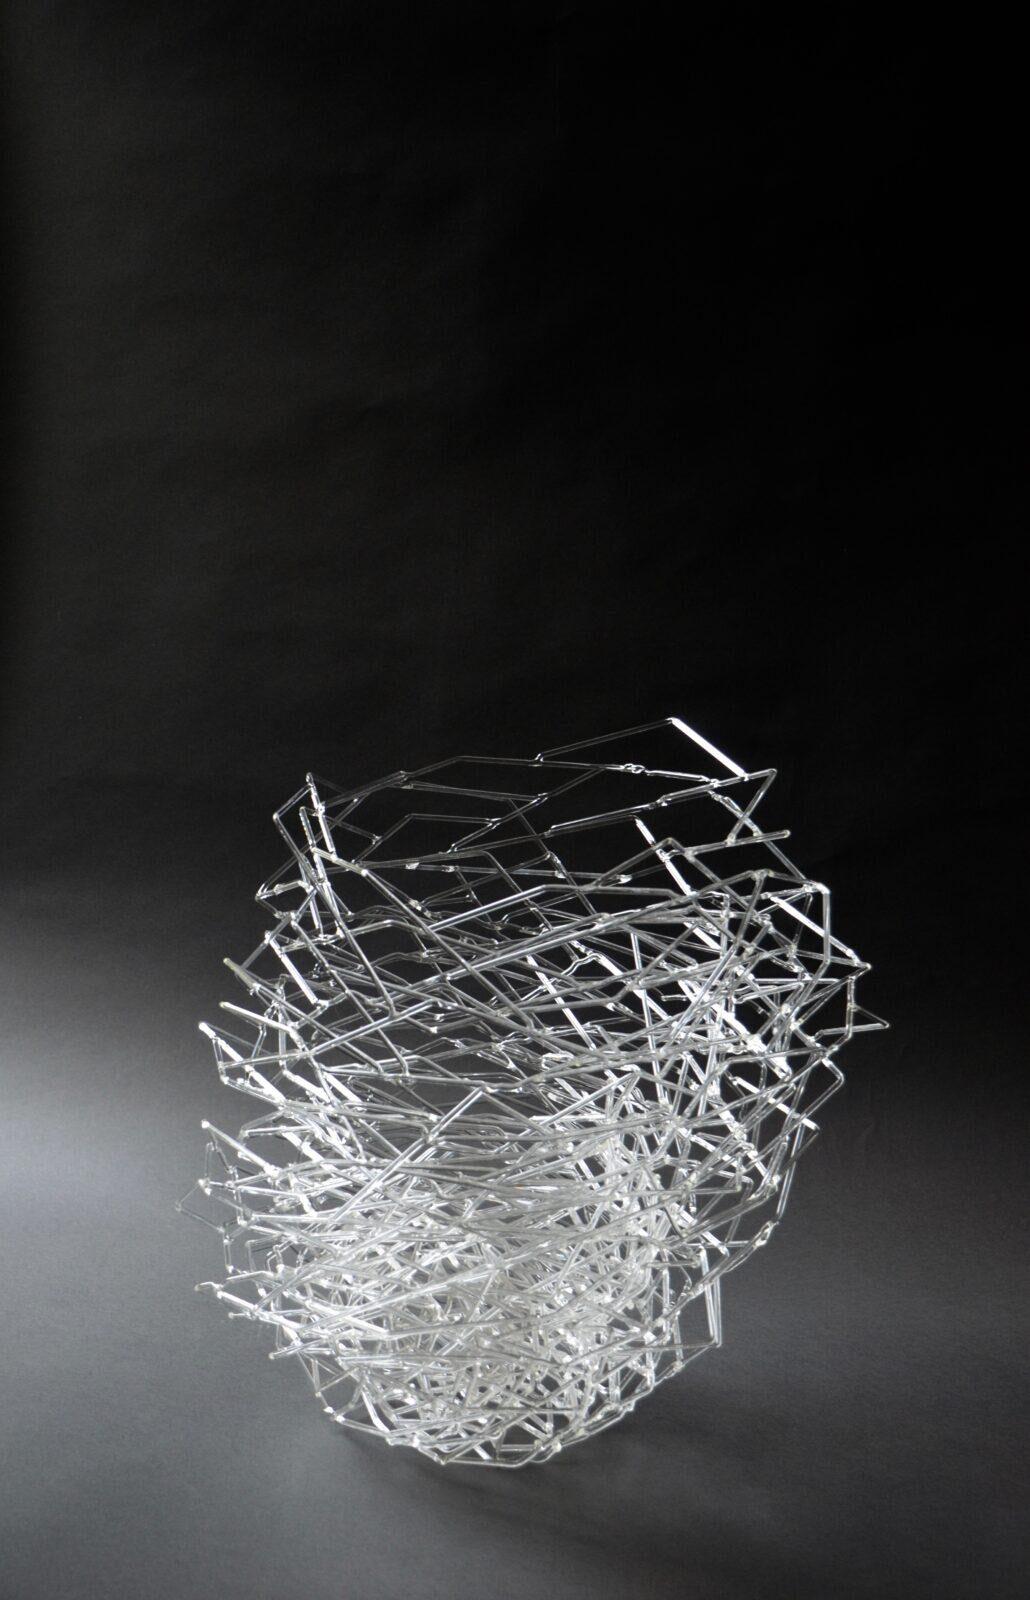 Christine Vanoppen, Out of line, Lampwerk met borosilicaatwerk, 2017, 60 x 40cm